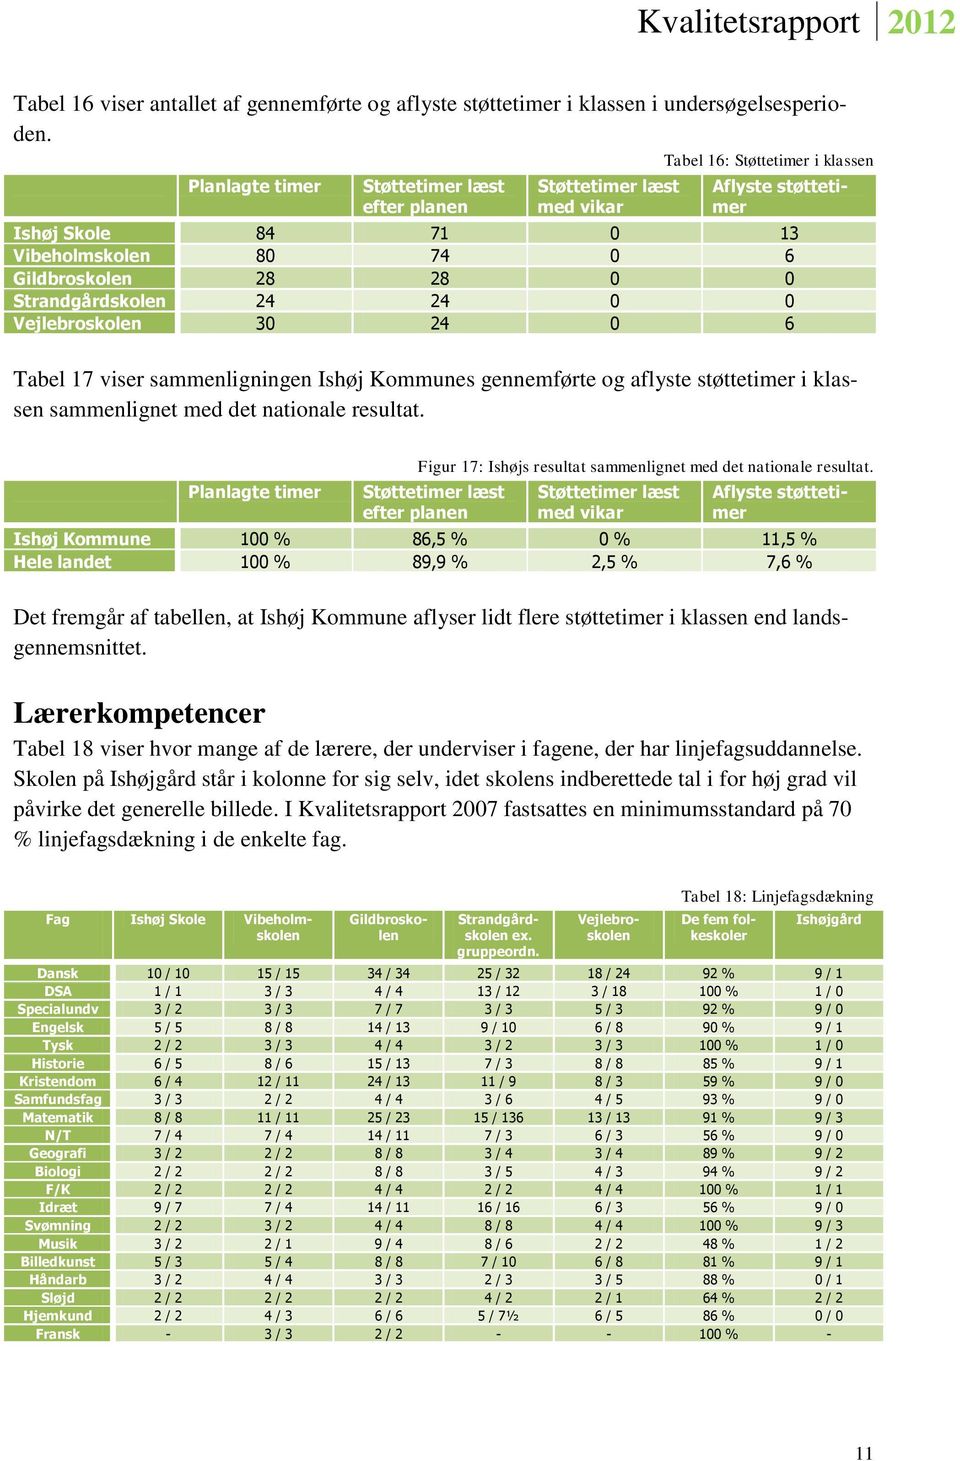 Strandgårdskolen 24 24 0 0 Vejlebroskolen 30 24 0 6 Tabel 17 viser sammenligningen Ishøj Kommunes gennemførte og aflyste støttetimer i klassen sammenlignet med det nationale resultat.